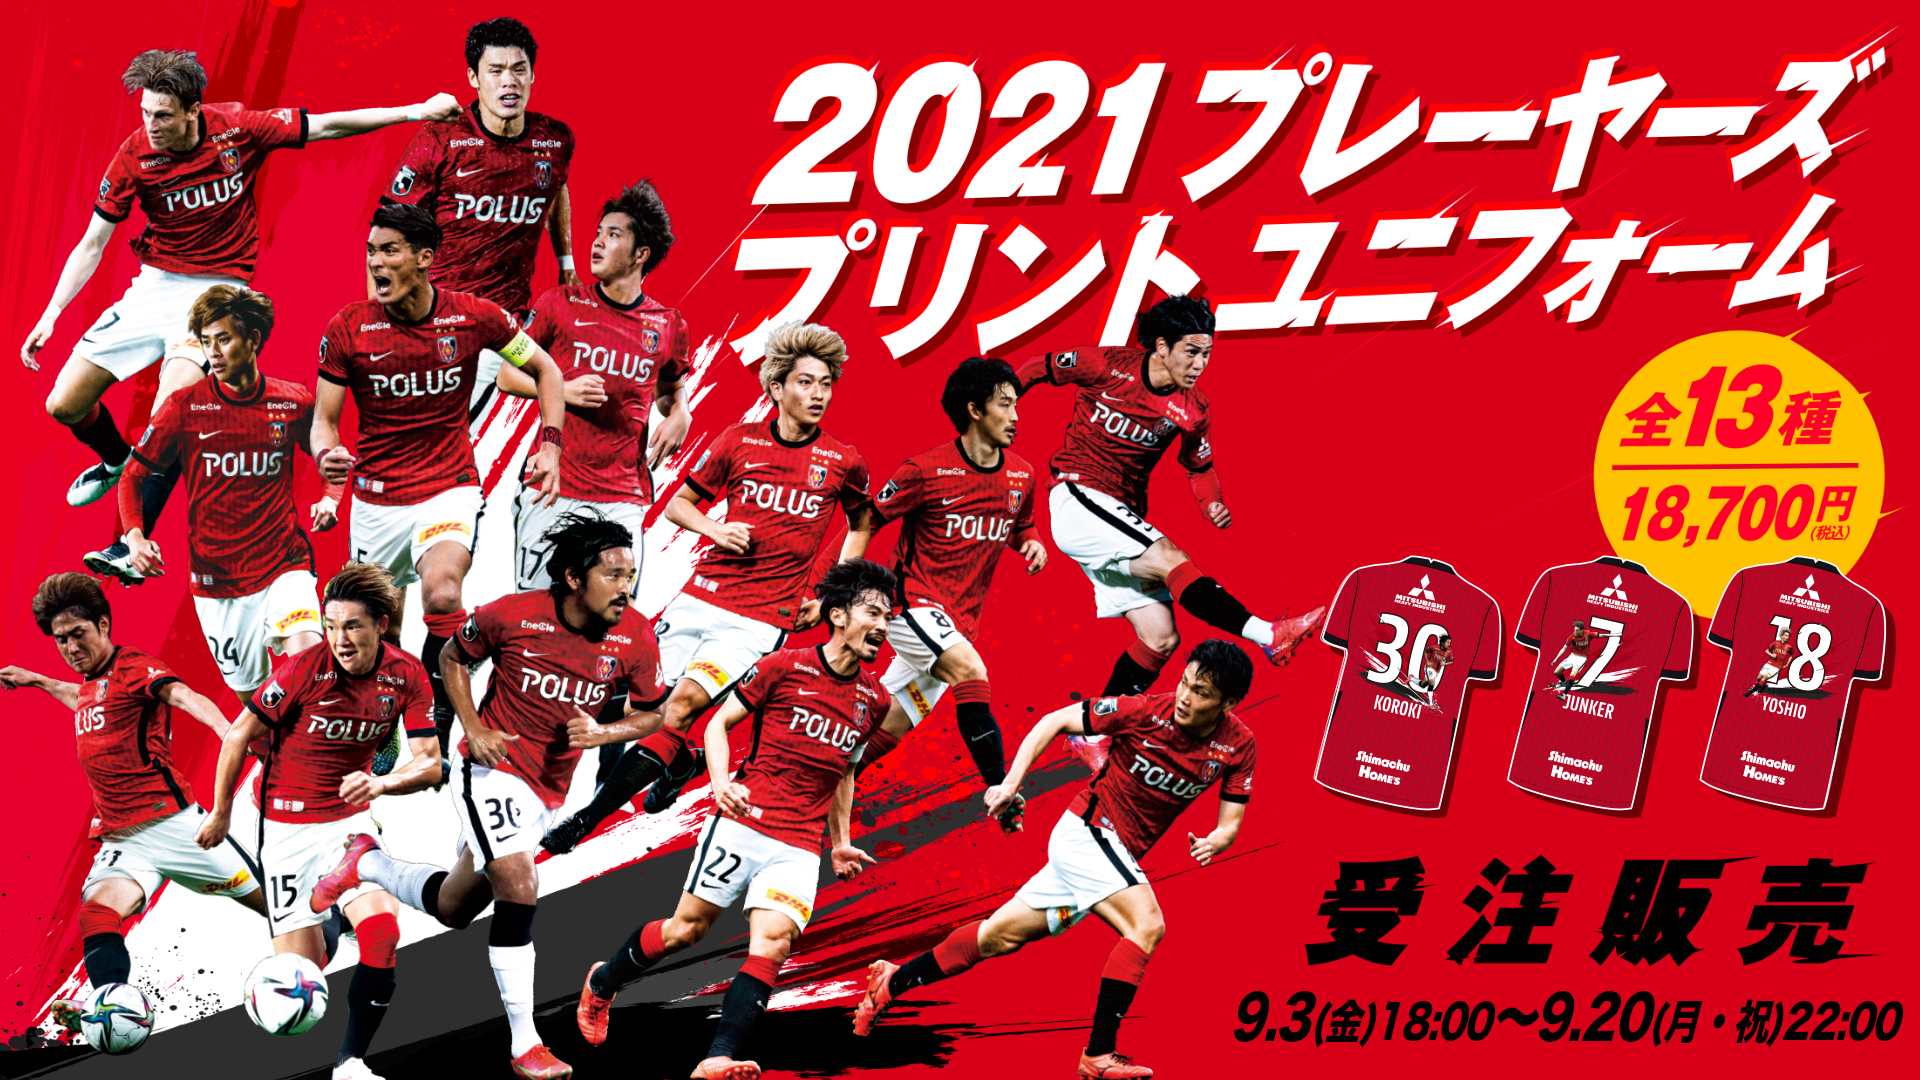 21プレーヤーズプリントユニフォーム 9 3 金 18時から オンラインショップで受注開始 Urawa Red Diamonds Official Website